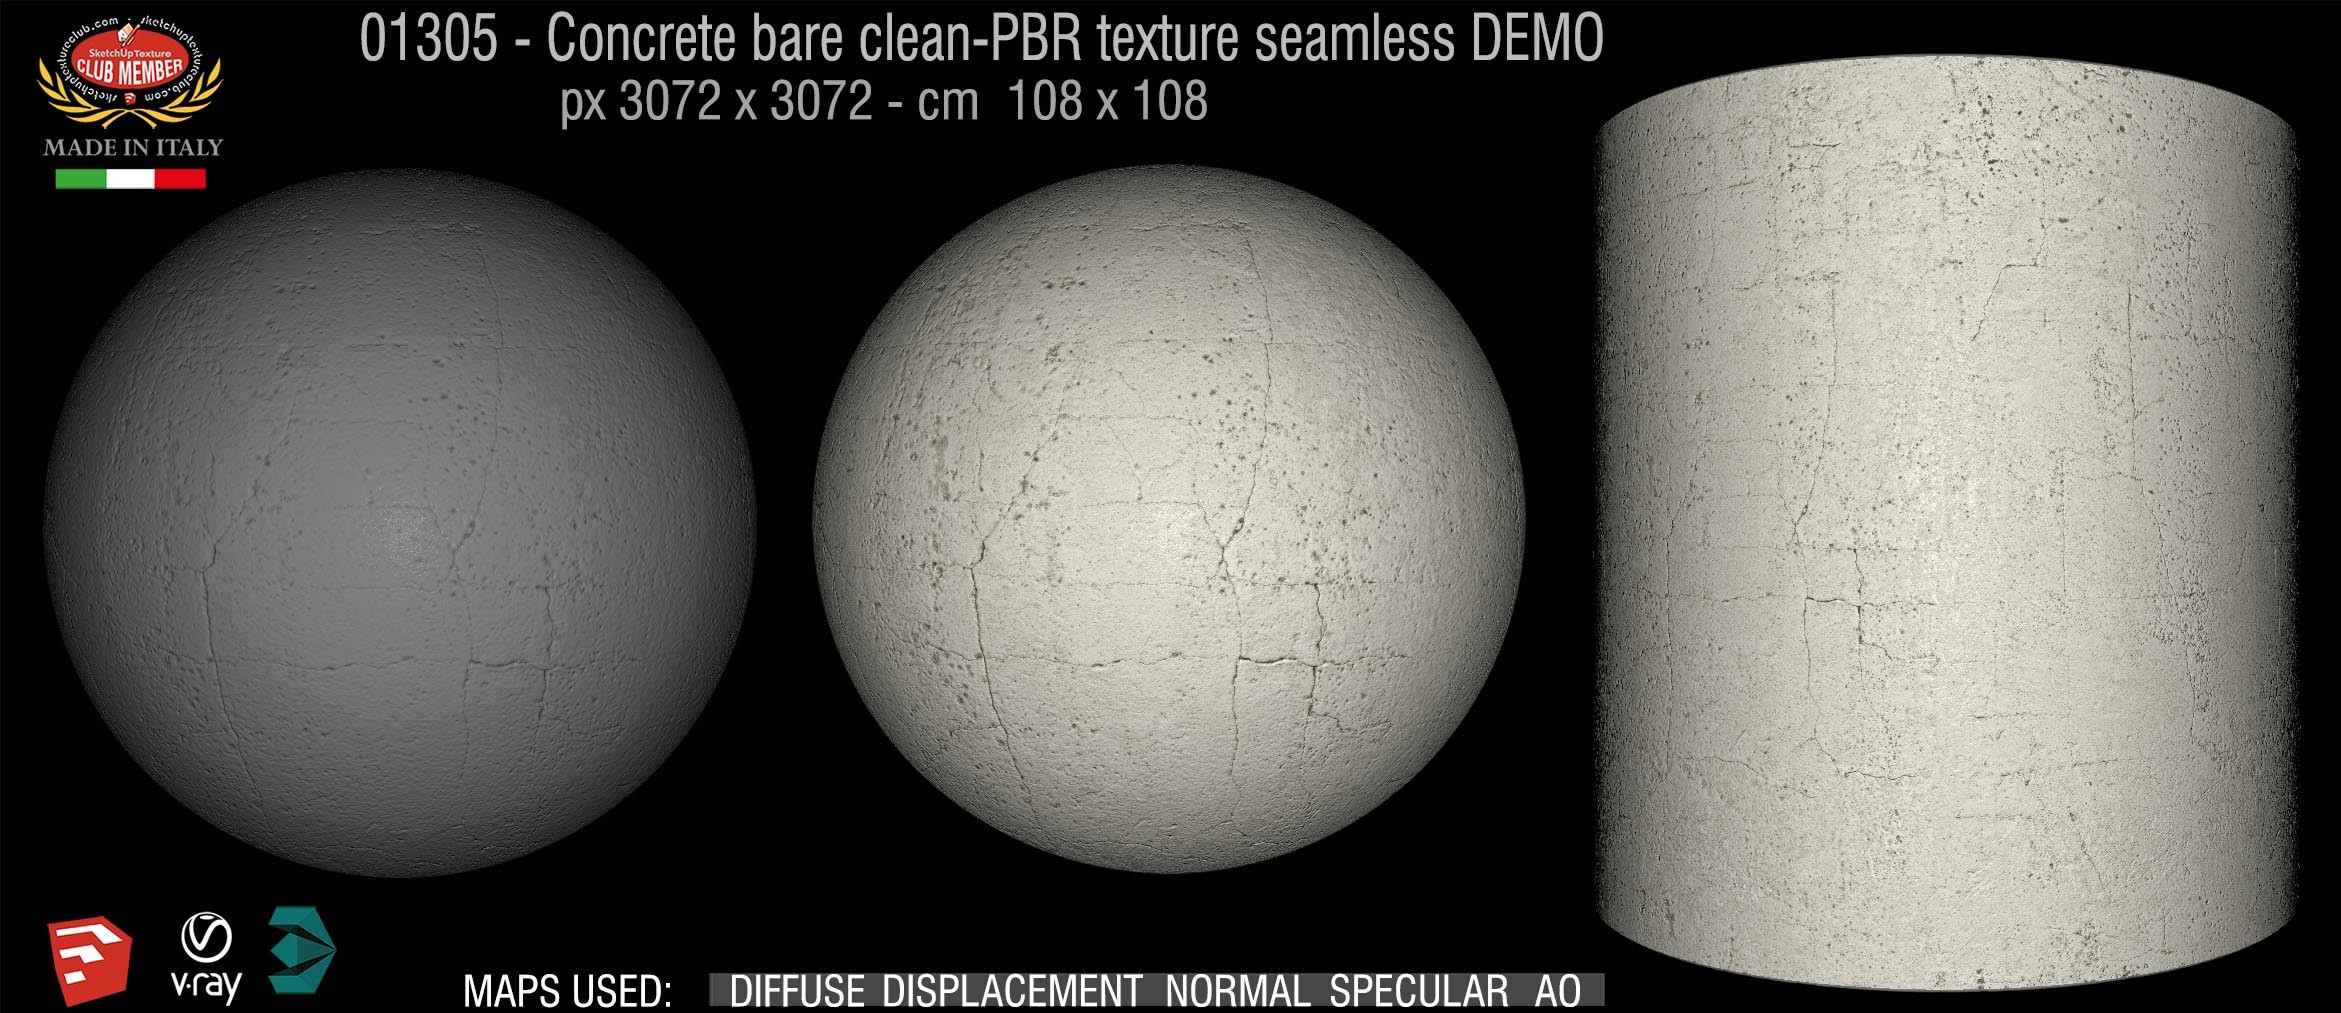 01305 Concrete bare clean-PBR texture seamless DEMO